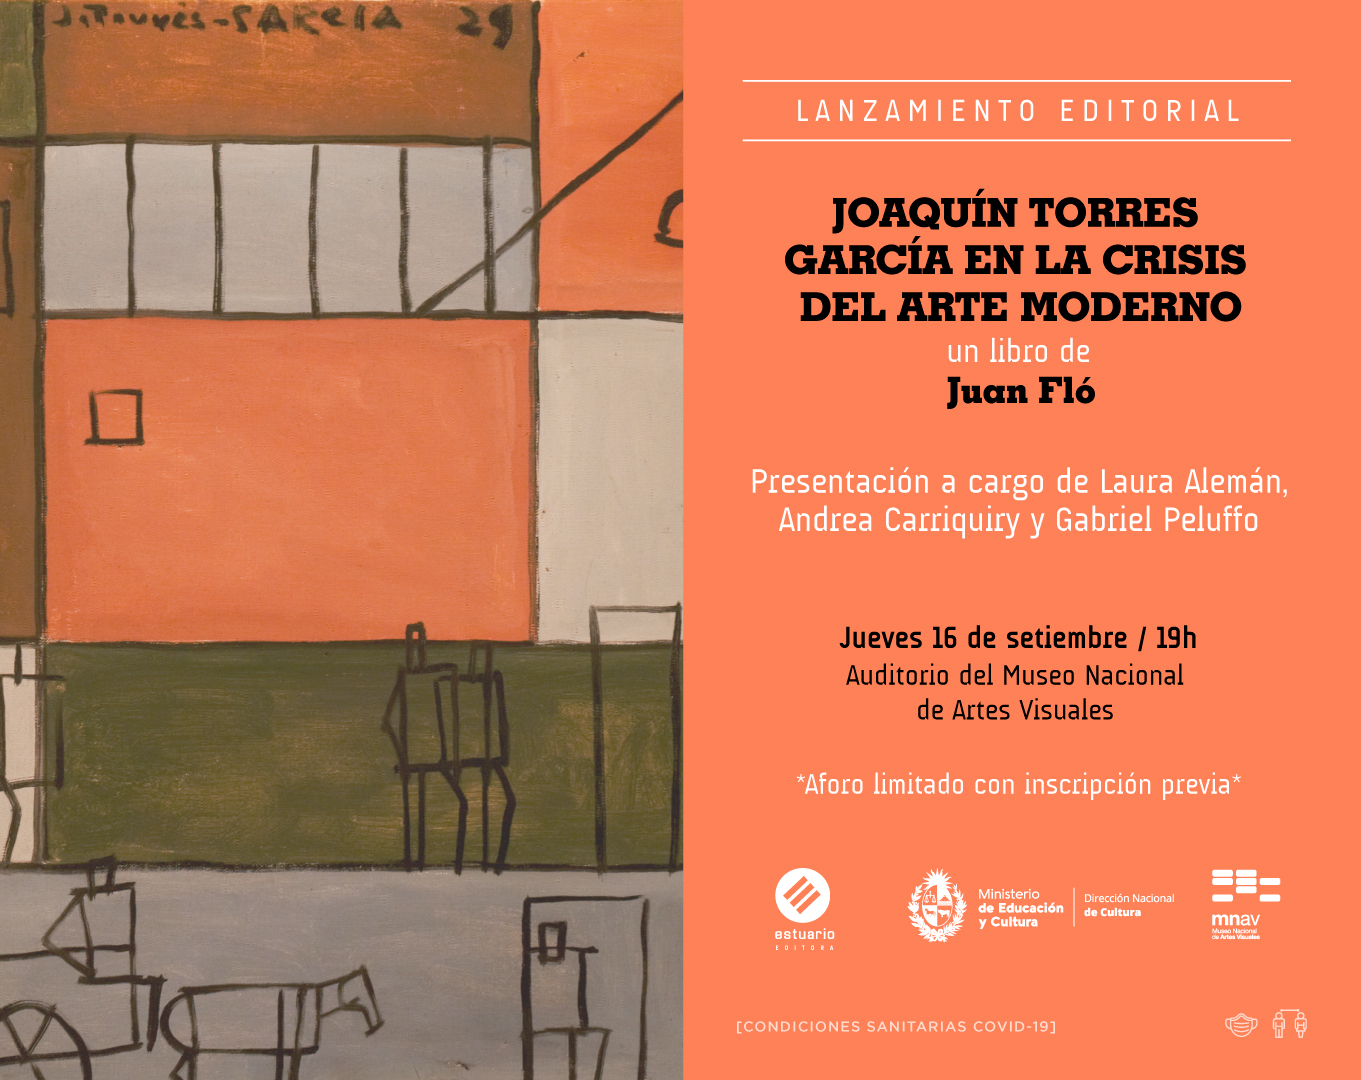  - Presentación del libro Joaquín Torres García en la crisis del arte moderno de Juan Fló - Museo Nacional de Artes Visuales